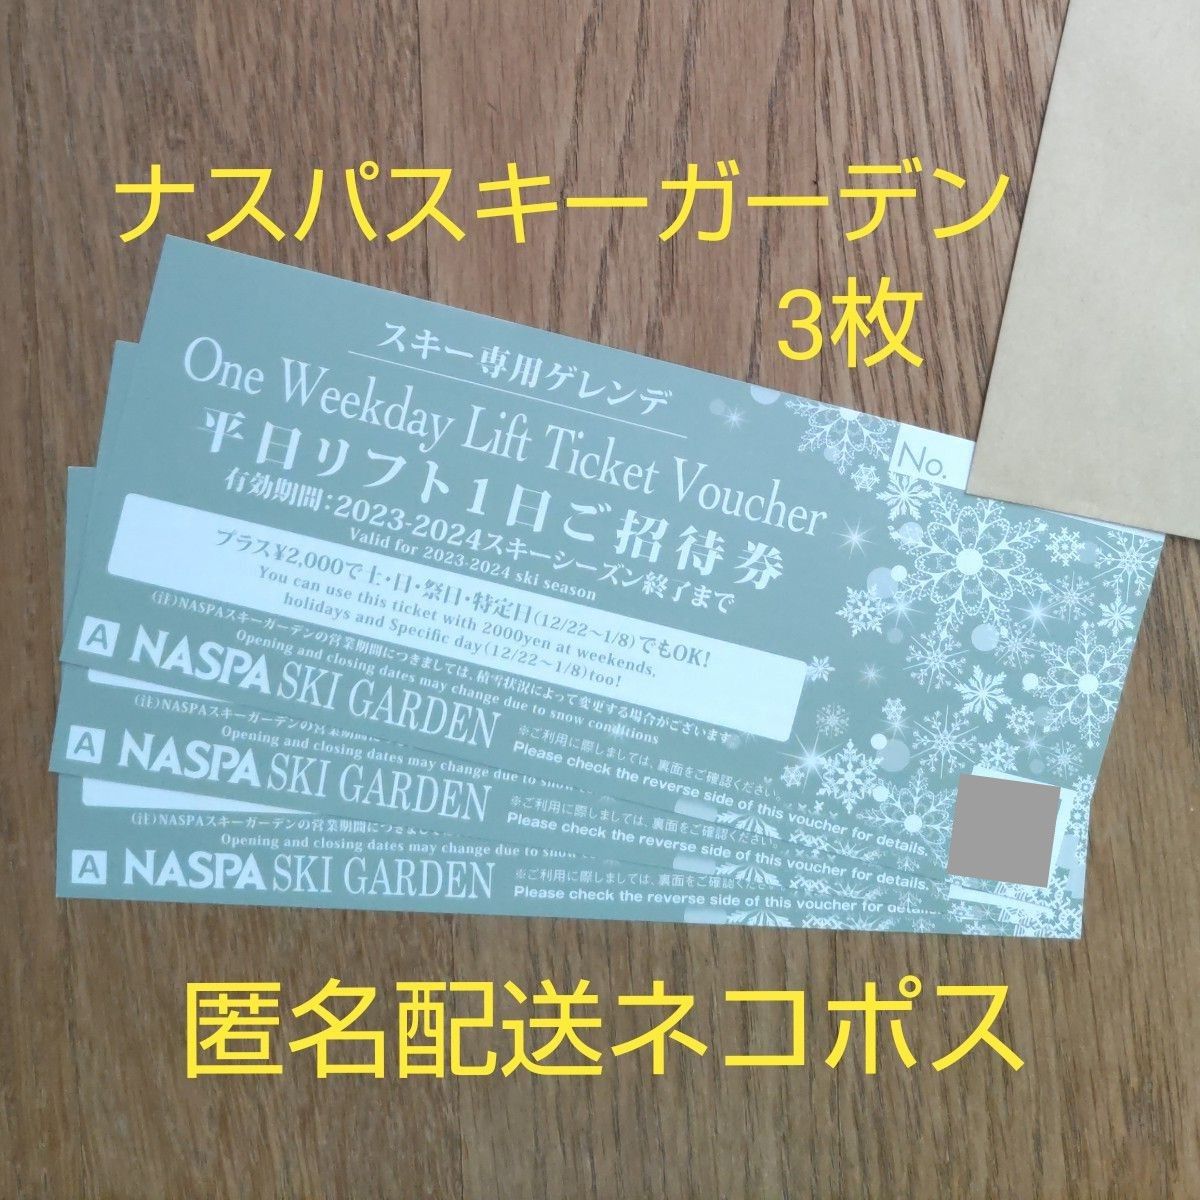 湯沢 新潟 NASPA ナスパ スキー リフト無料券 平日 - スキー場